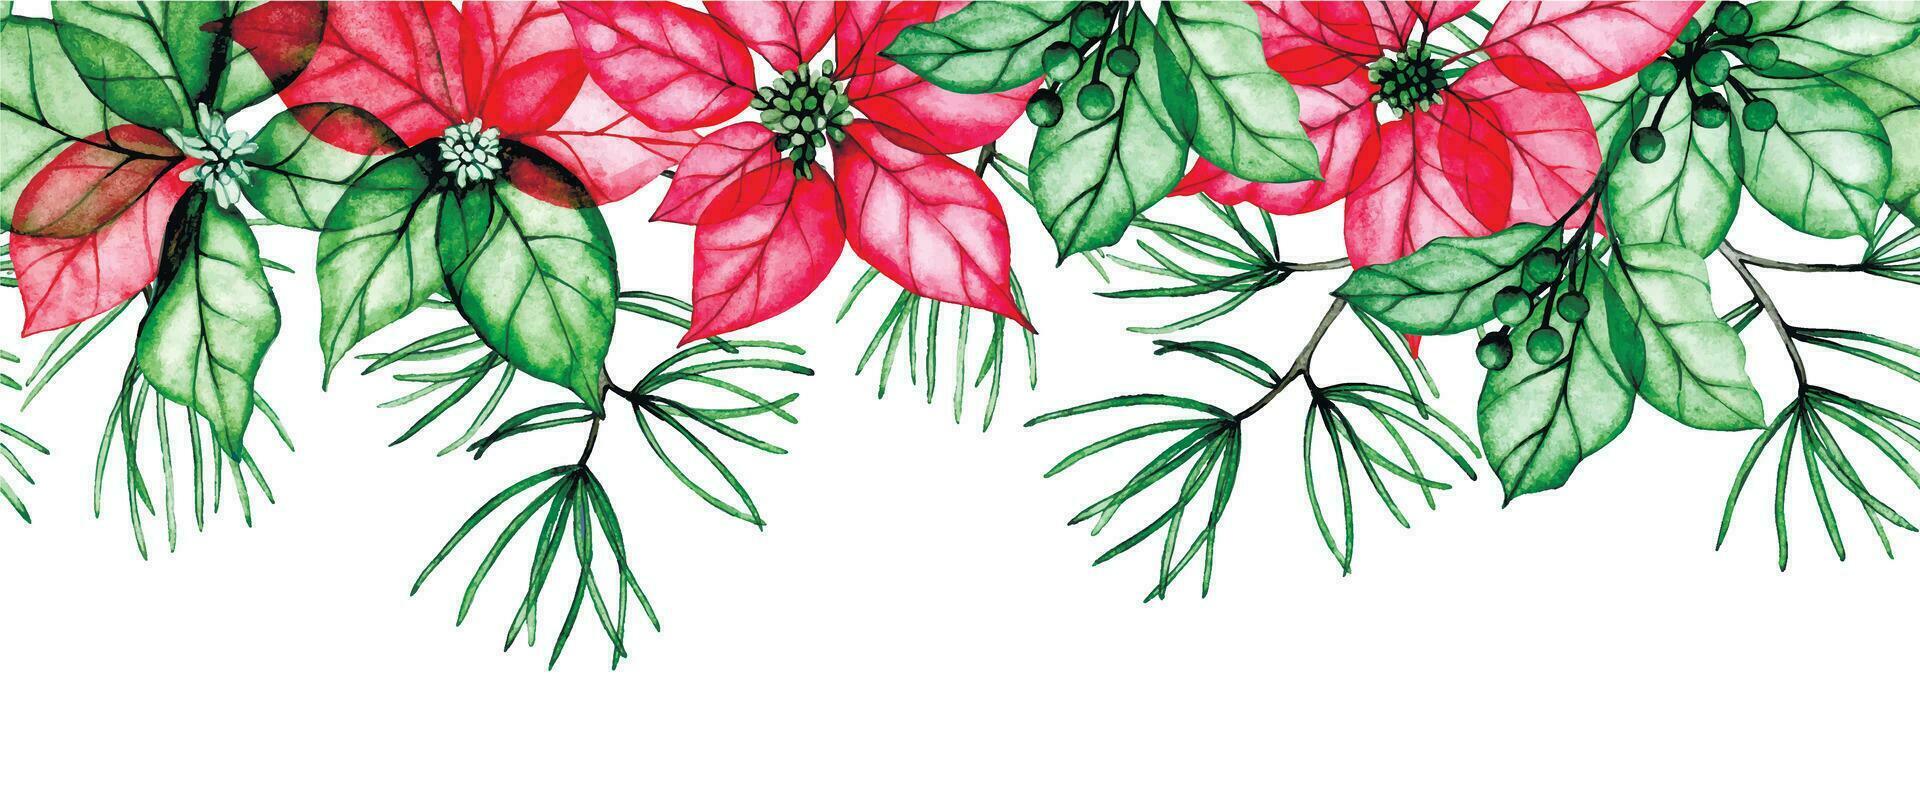 waterverf patroon, Kerstmis decoratie naadloos grens, kader met transparant bloemen, röntgenfoto. kerstster bloemen, hulst bladeren en net takken. winter samenstelling voor nieuw jaar, Kerstmis vector